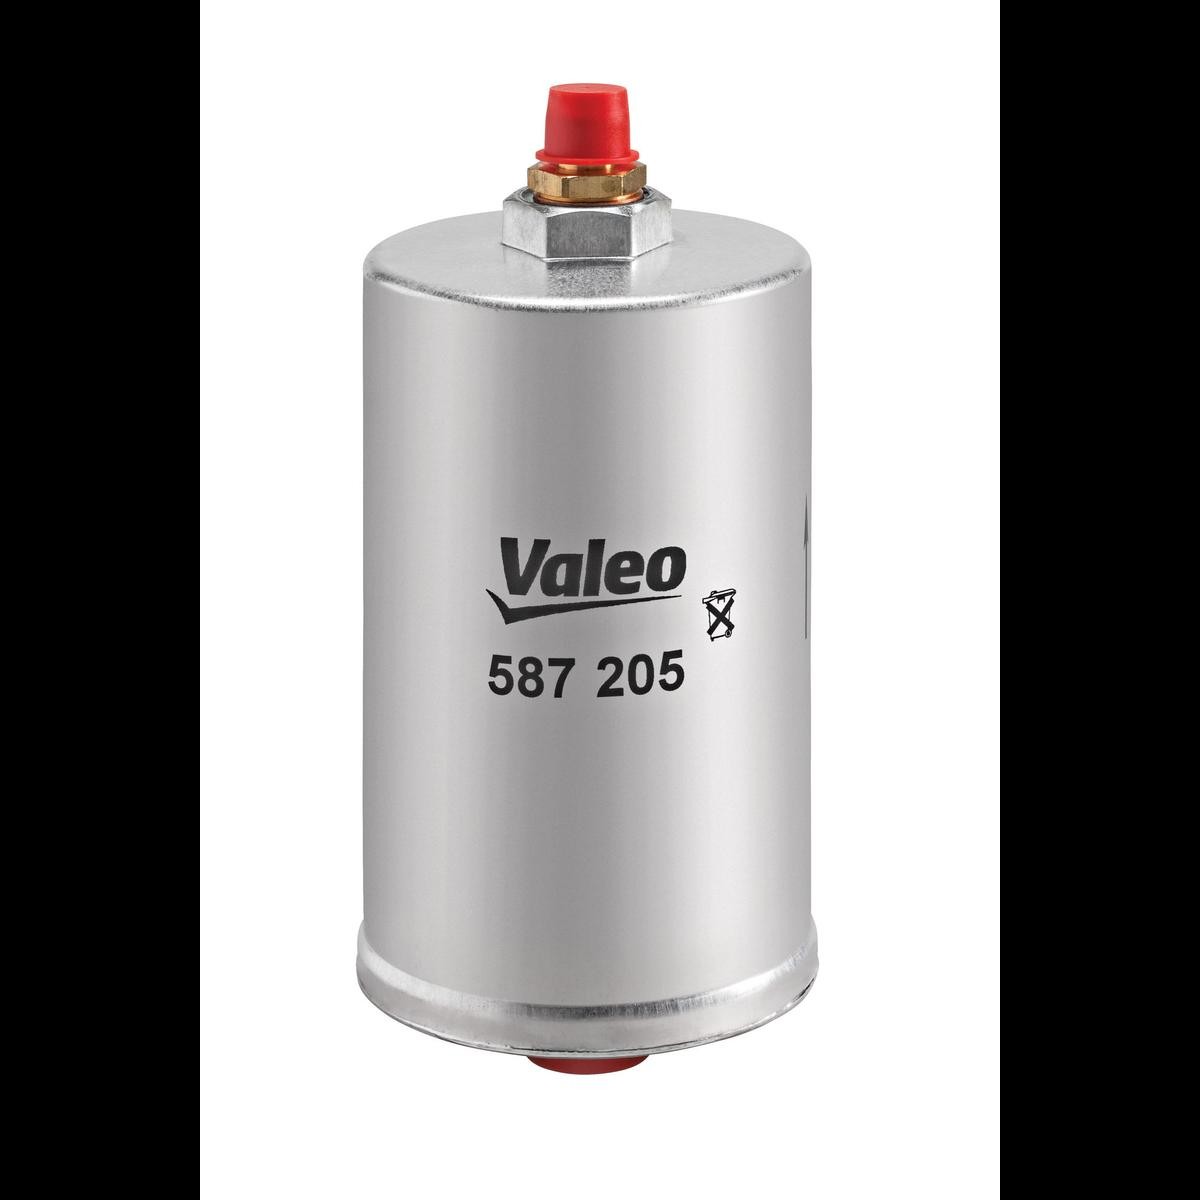 VALEO 587205 Fuel filter 002-477-13-01